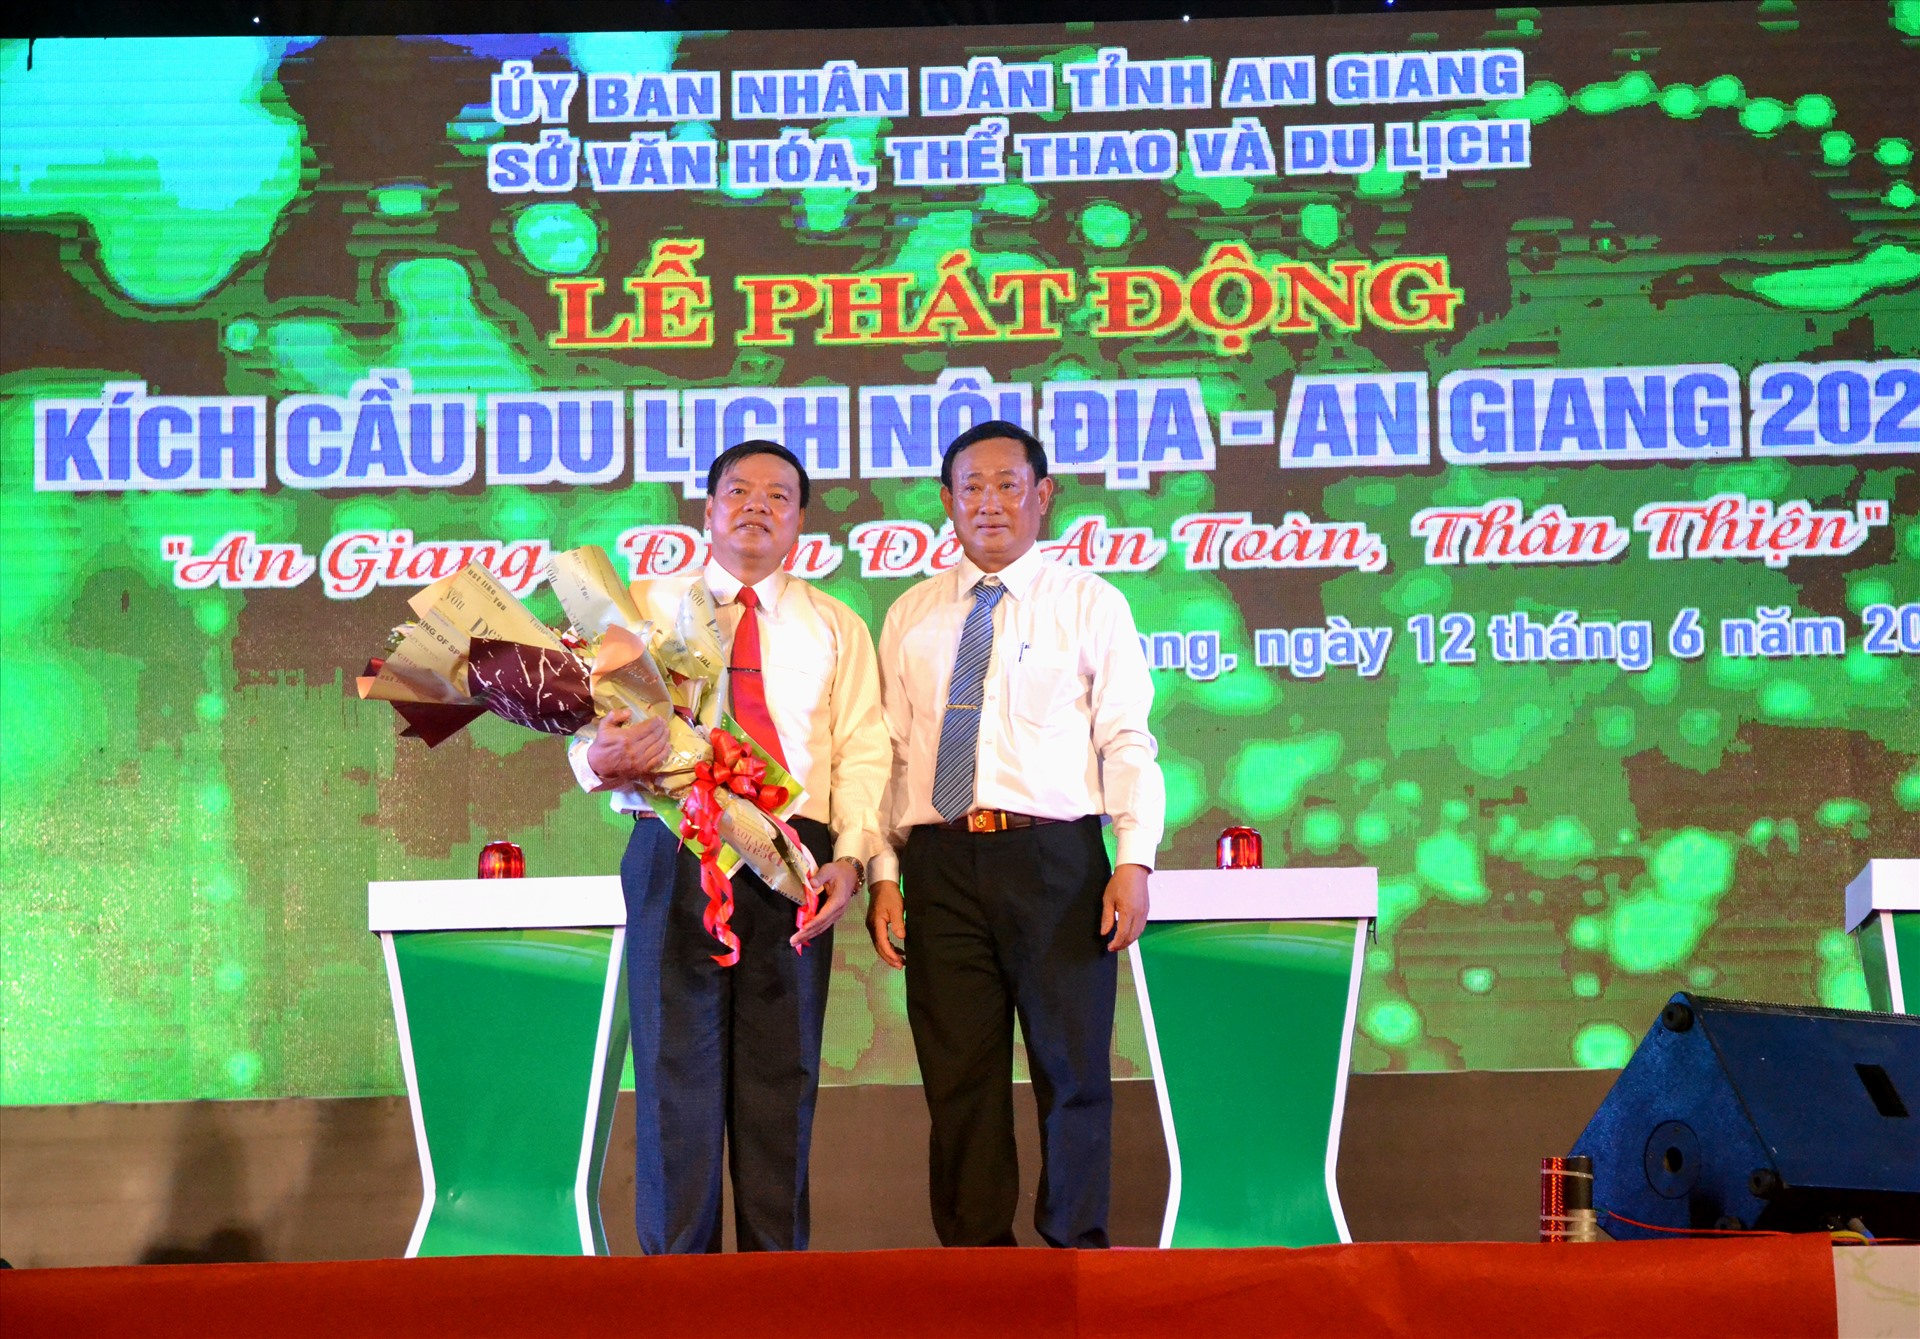 Chủ tịch UBMTTQ tỉnh An Giang Nguyễn Tiếc Hùng tặng hoa cho đại diện doanh nghiệp du lịch An Giang. Ảnh: LT